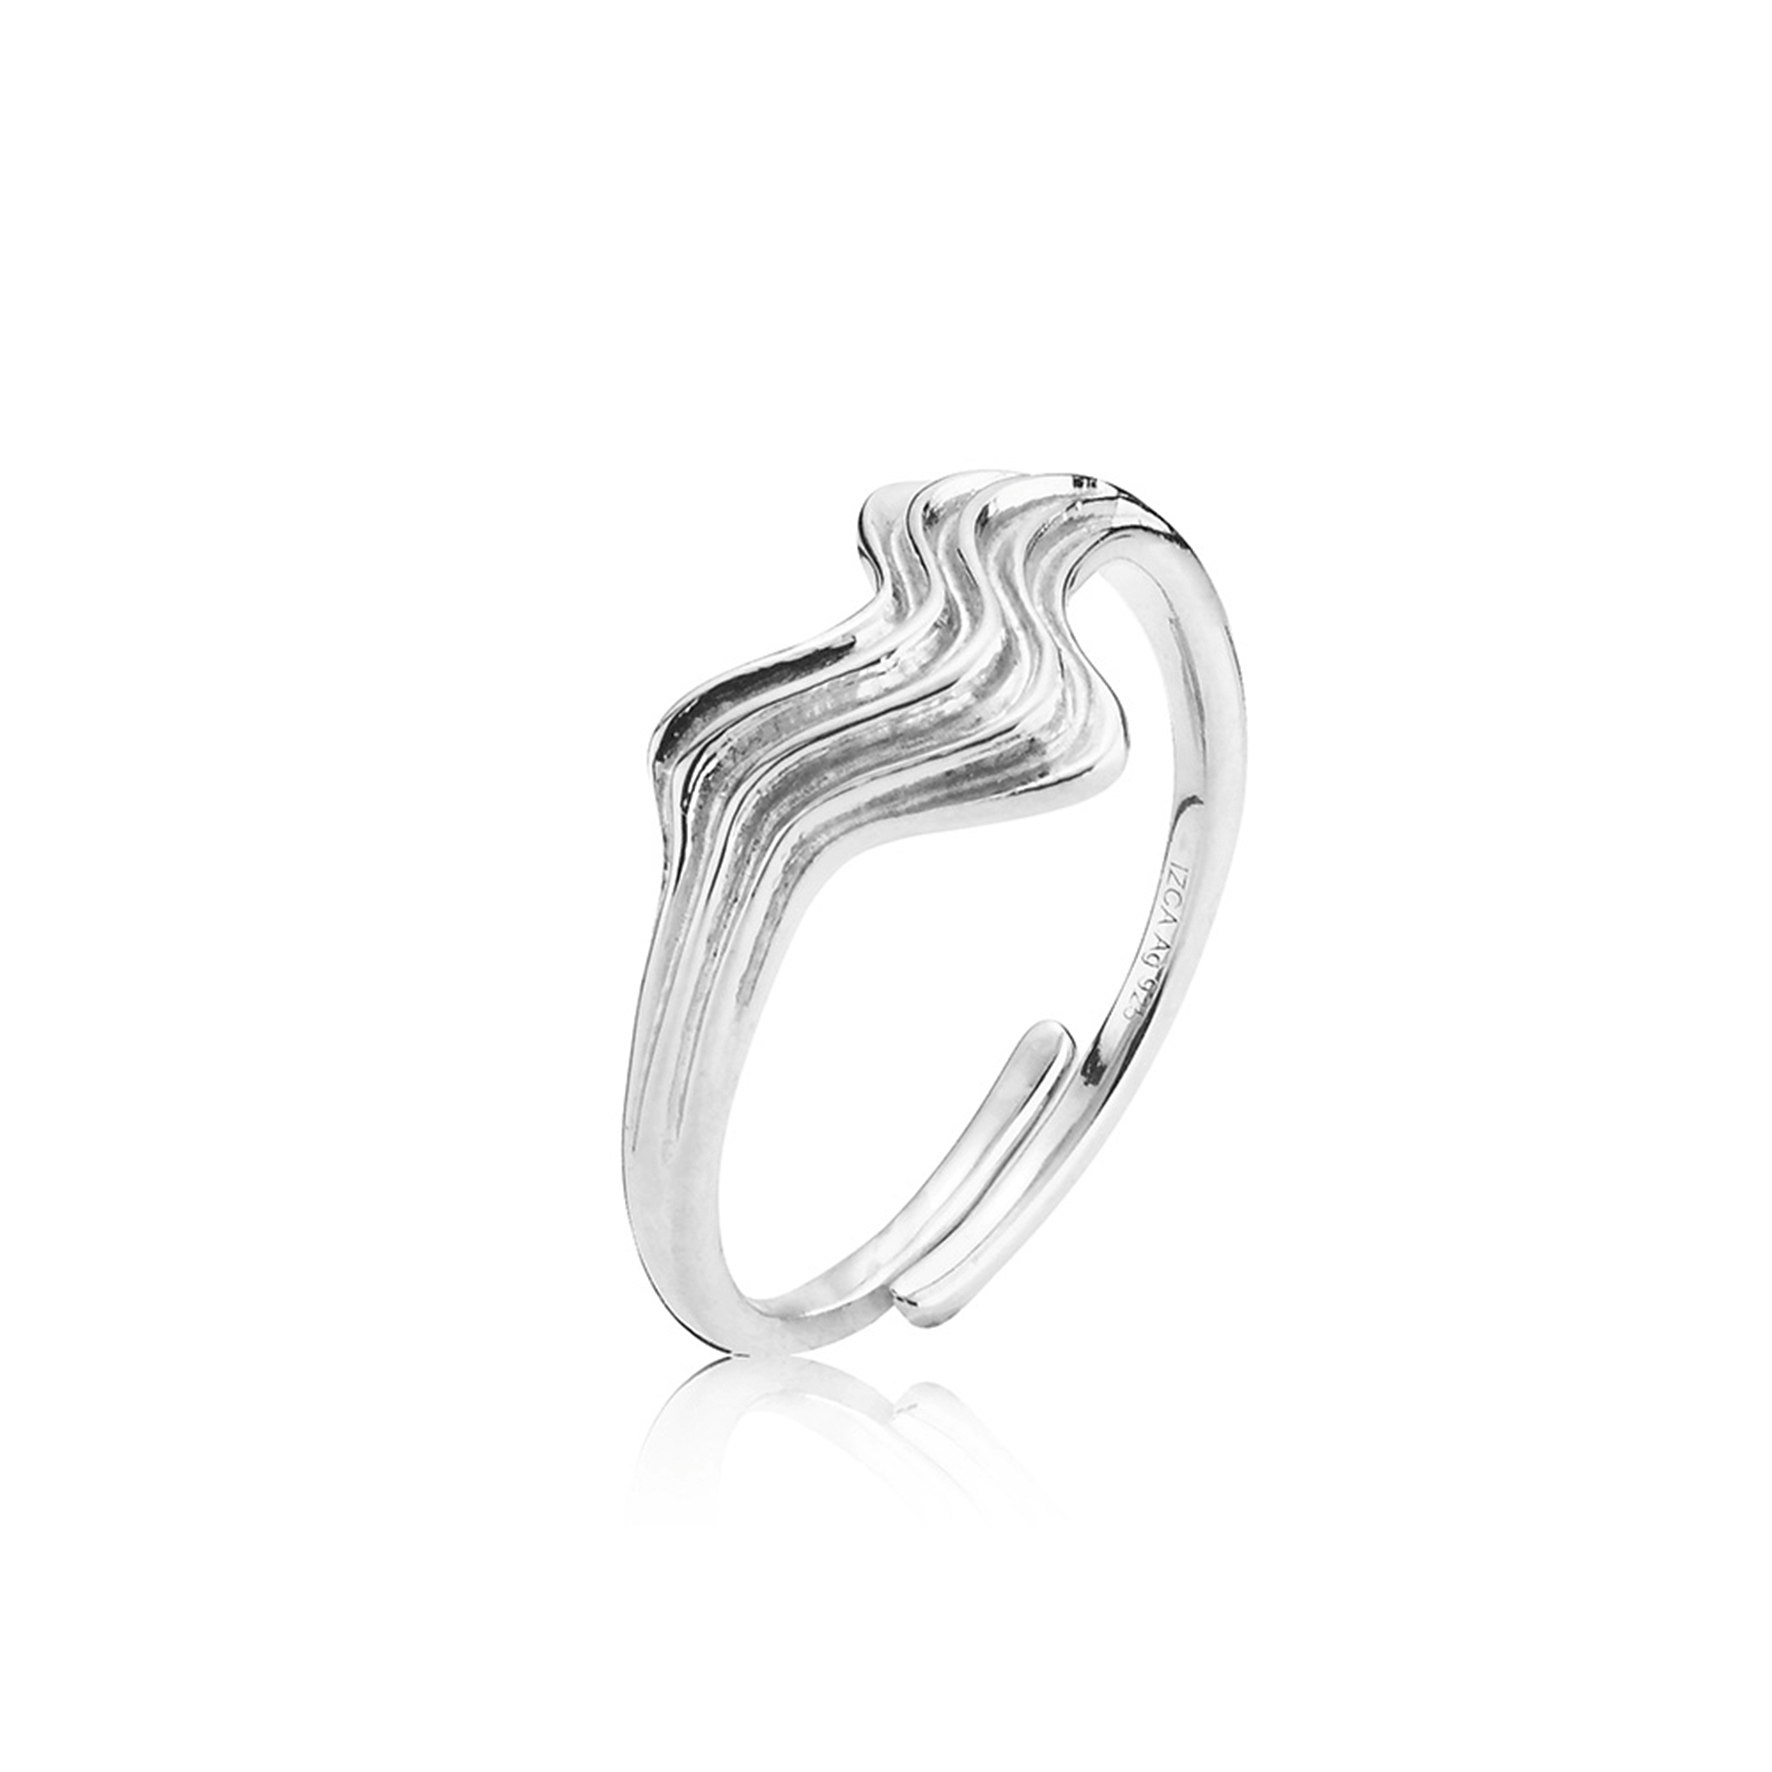 Silke x Sistie Waves Ring von Sistie in Silber Sterling 925